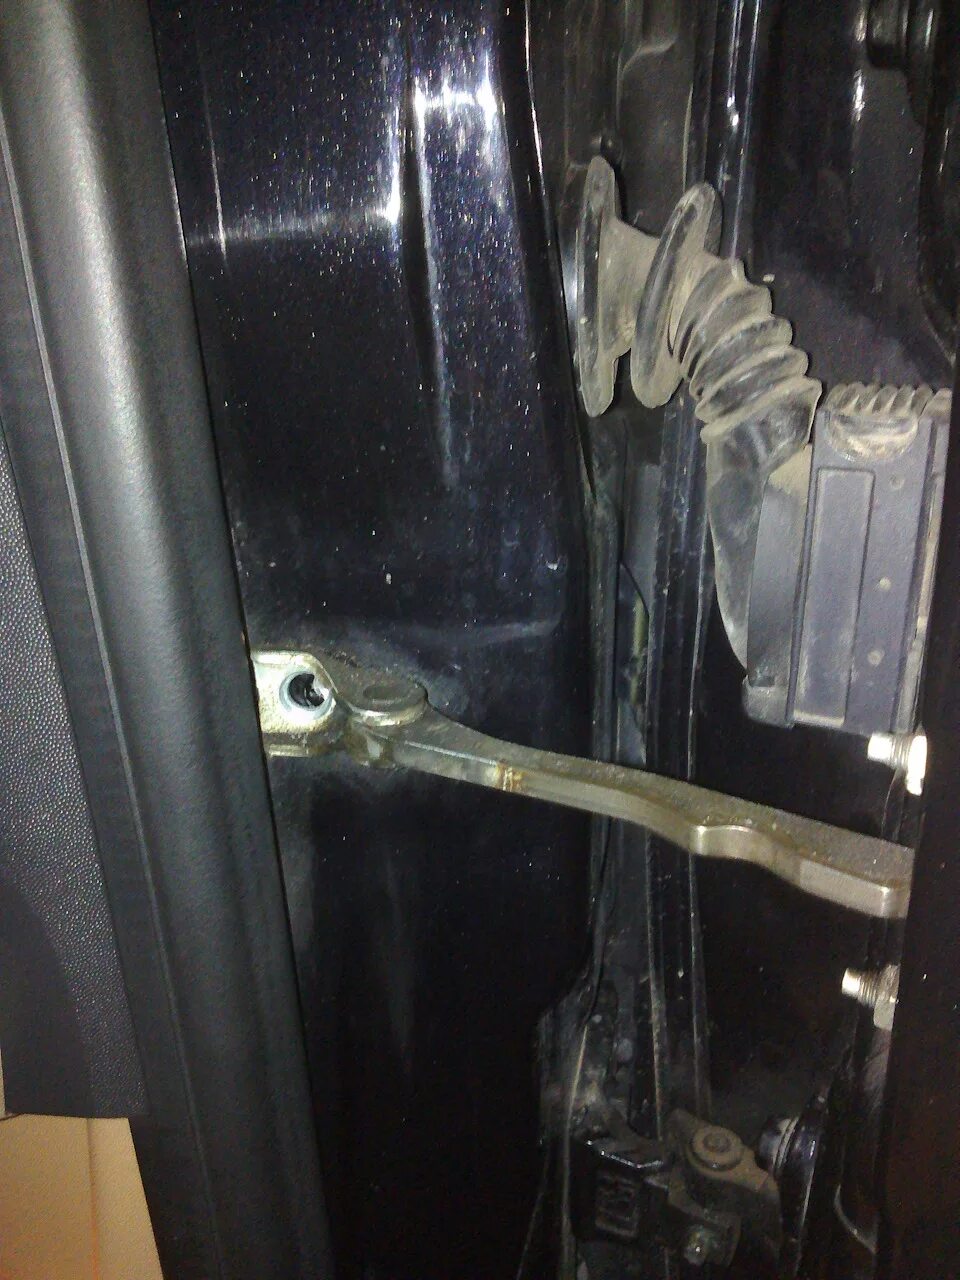 Ремкомплекты ограничителей дверей Opel Vectra c. Ремкомплект ограничителя двери на Опель Вектра с 2003. Хруст двери Opel Astra h. Куплю дверь опель вектра б